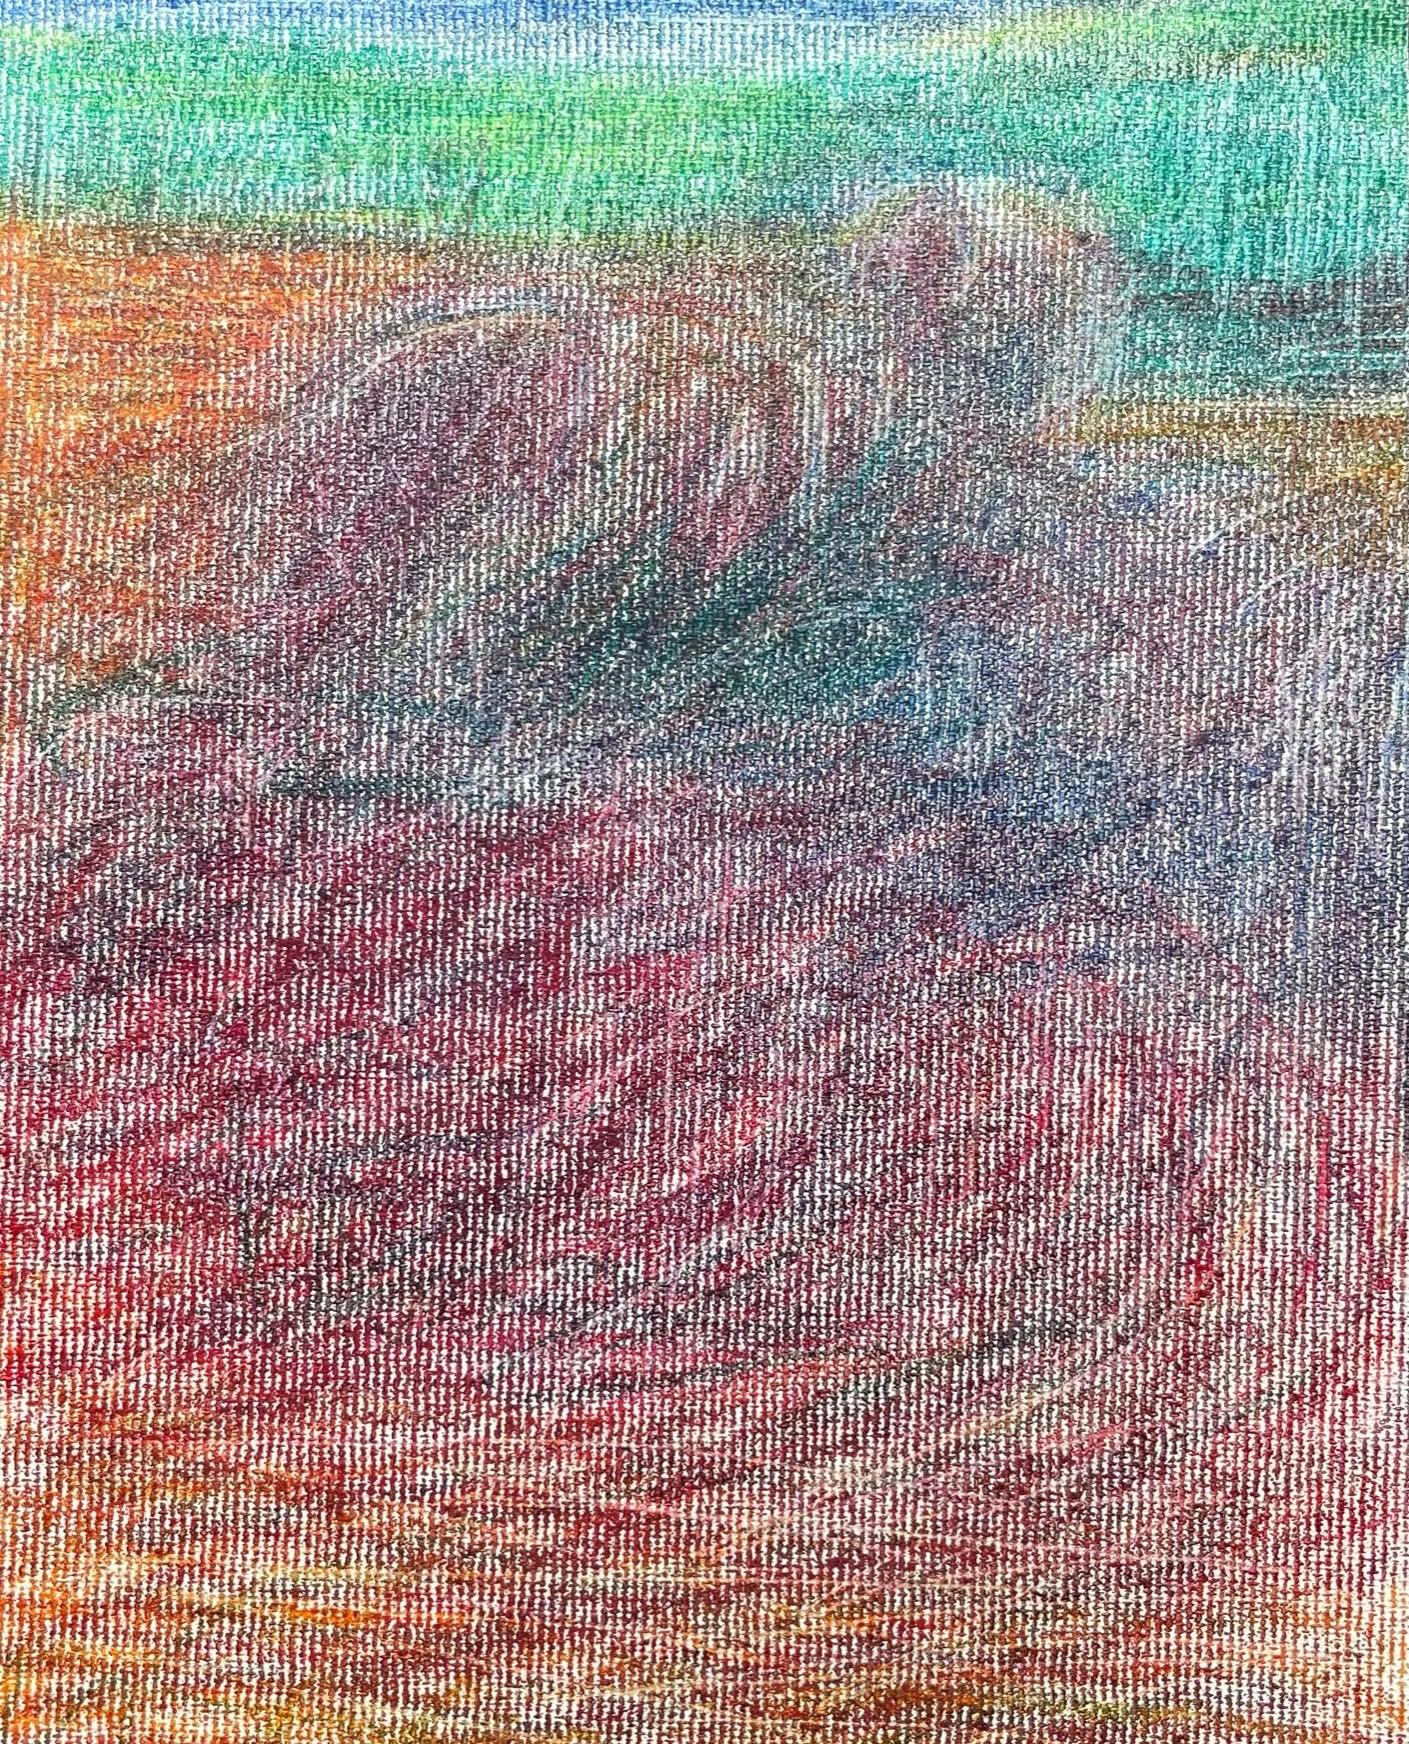 Body in the Field #9 – Landschaft, Orange, Rot, Buntstift  (Grau), Landscape Art, von Zsolt Berszán